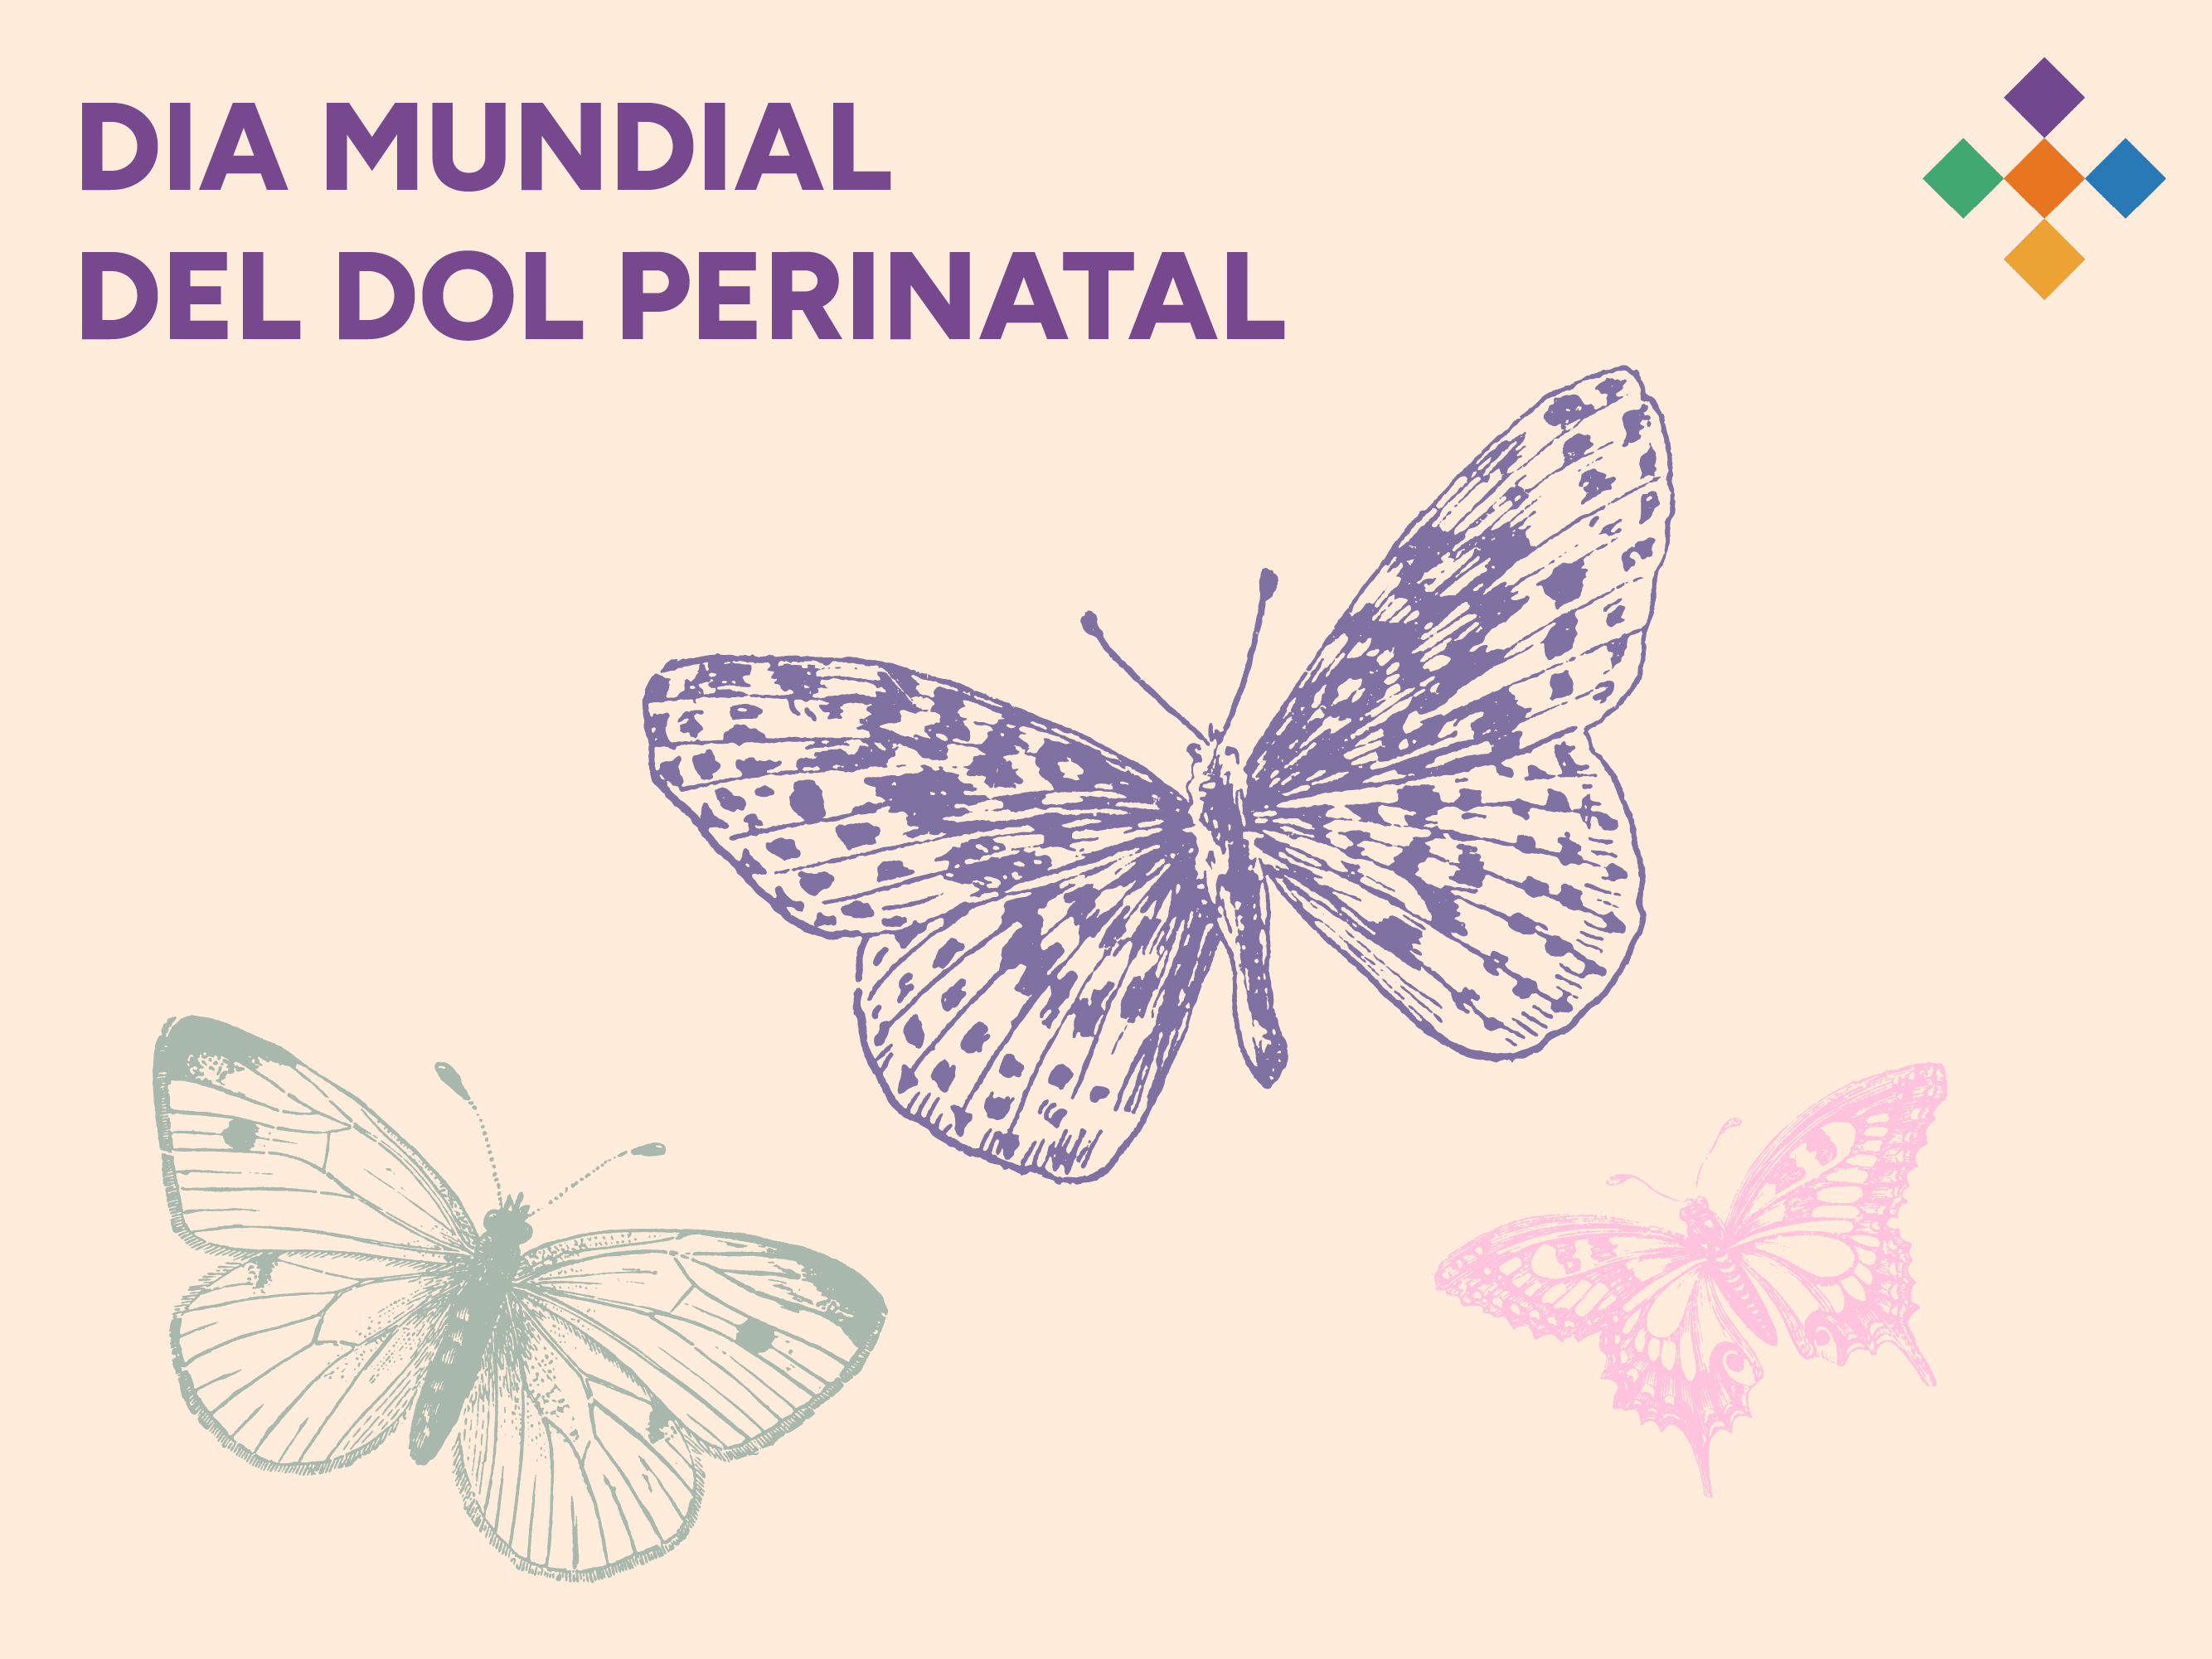 Dia Mundial del Dol perinatal – 15 d’octubre